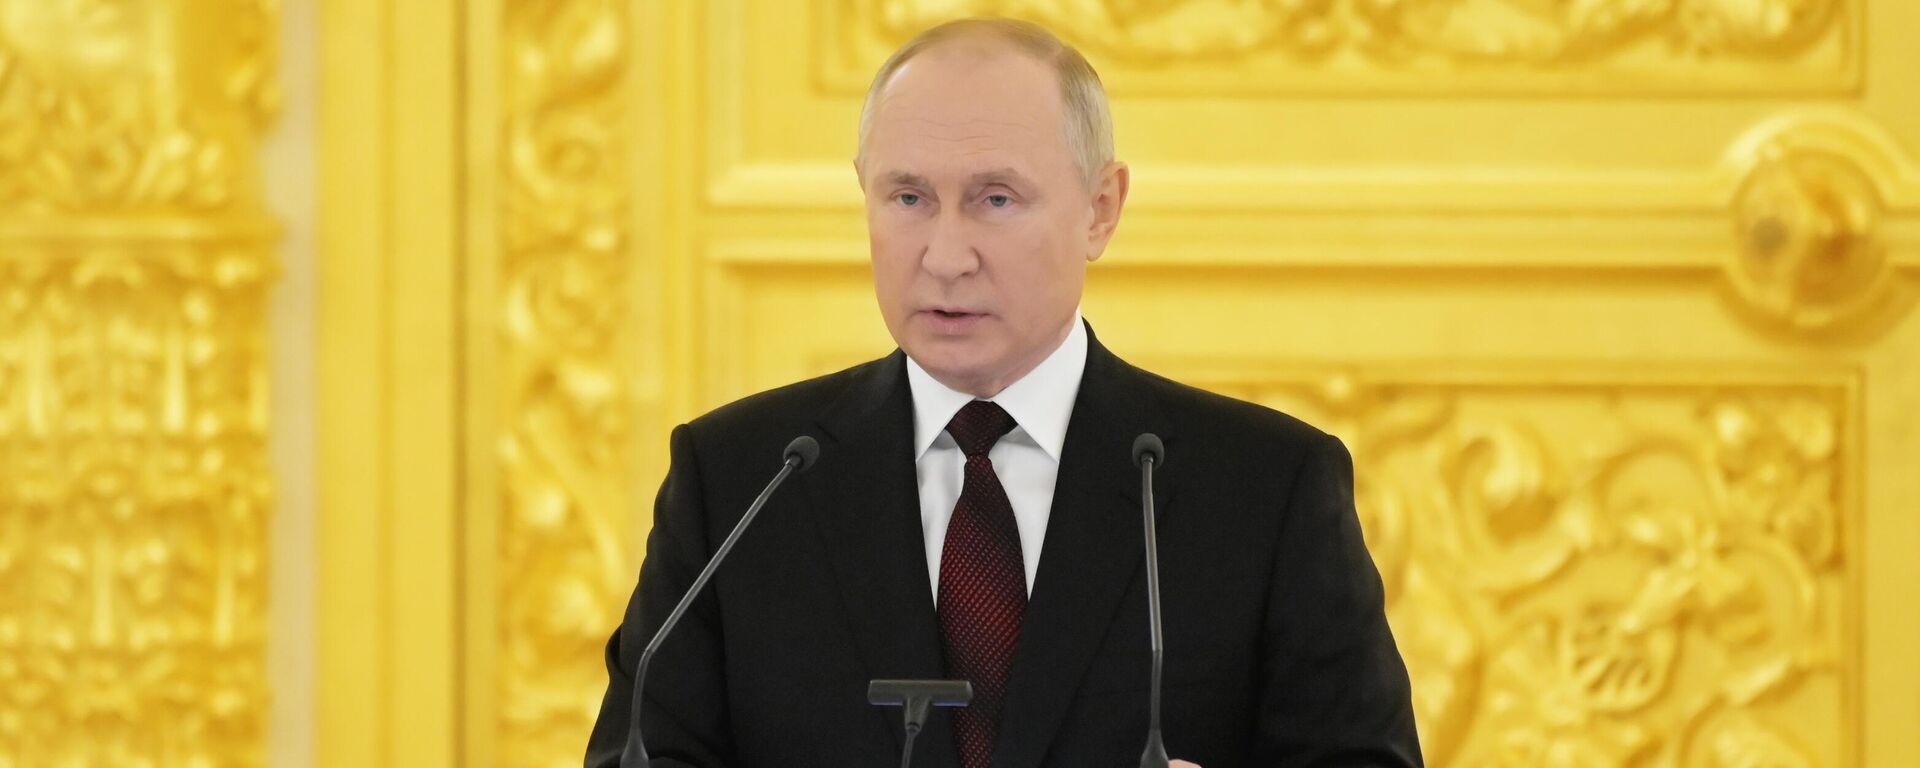 Президент РФ Владимир Путин в Кремле - Sputnik Латвия, 1920, 01.12.2021